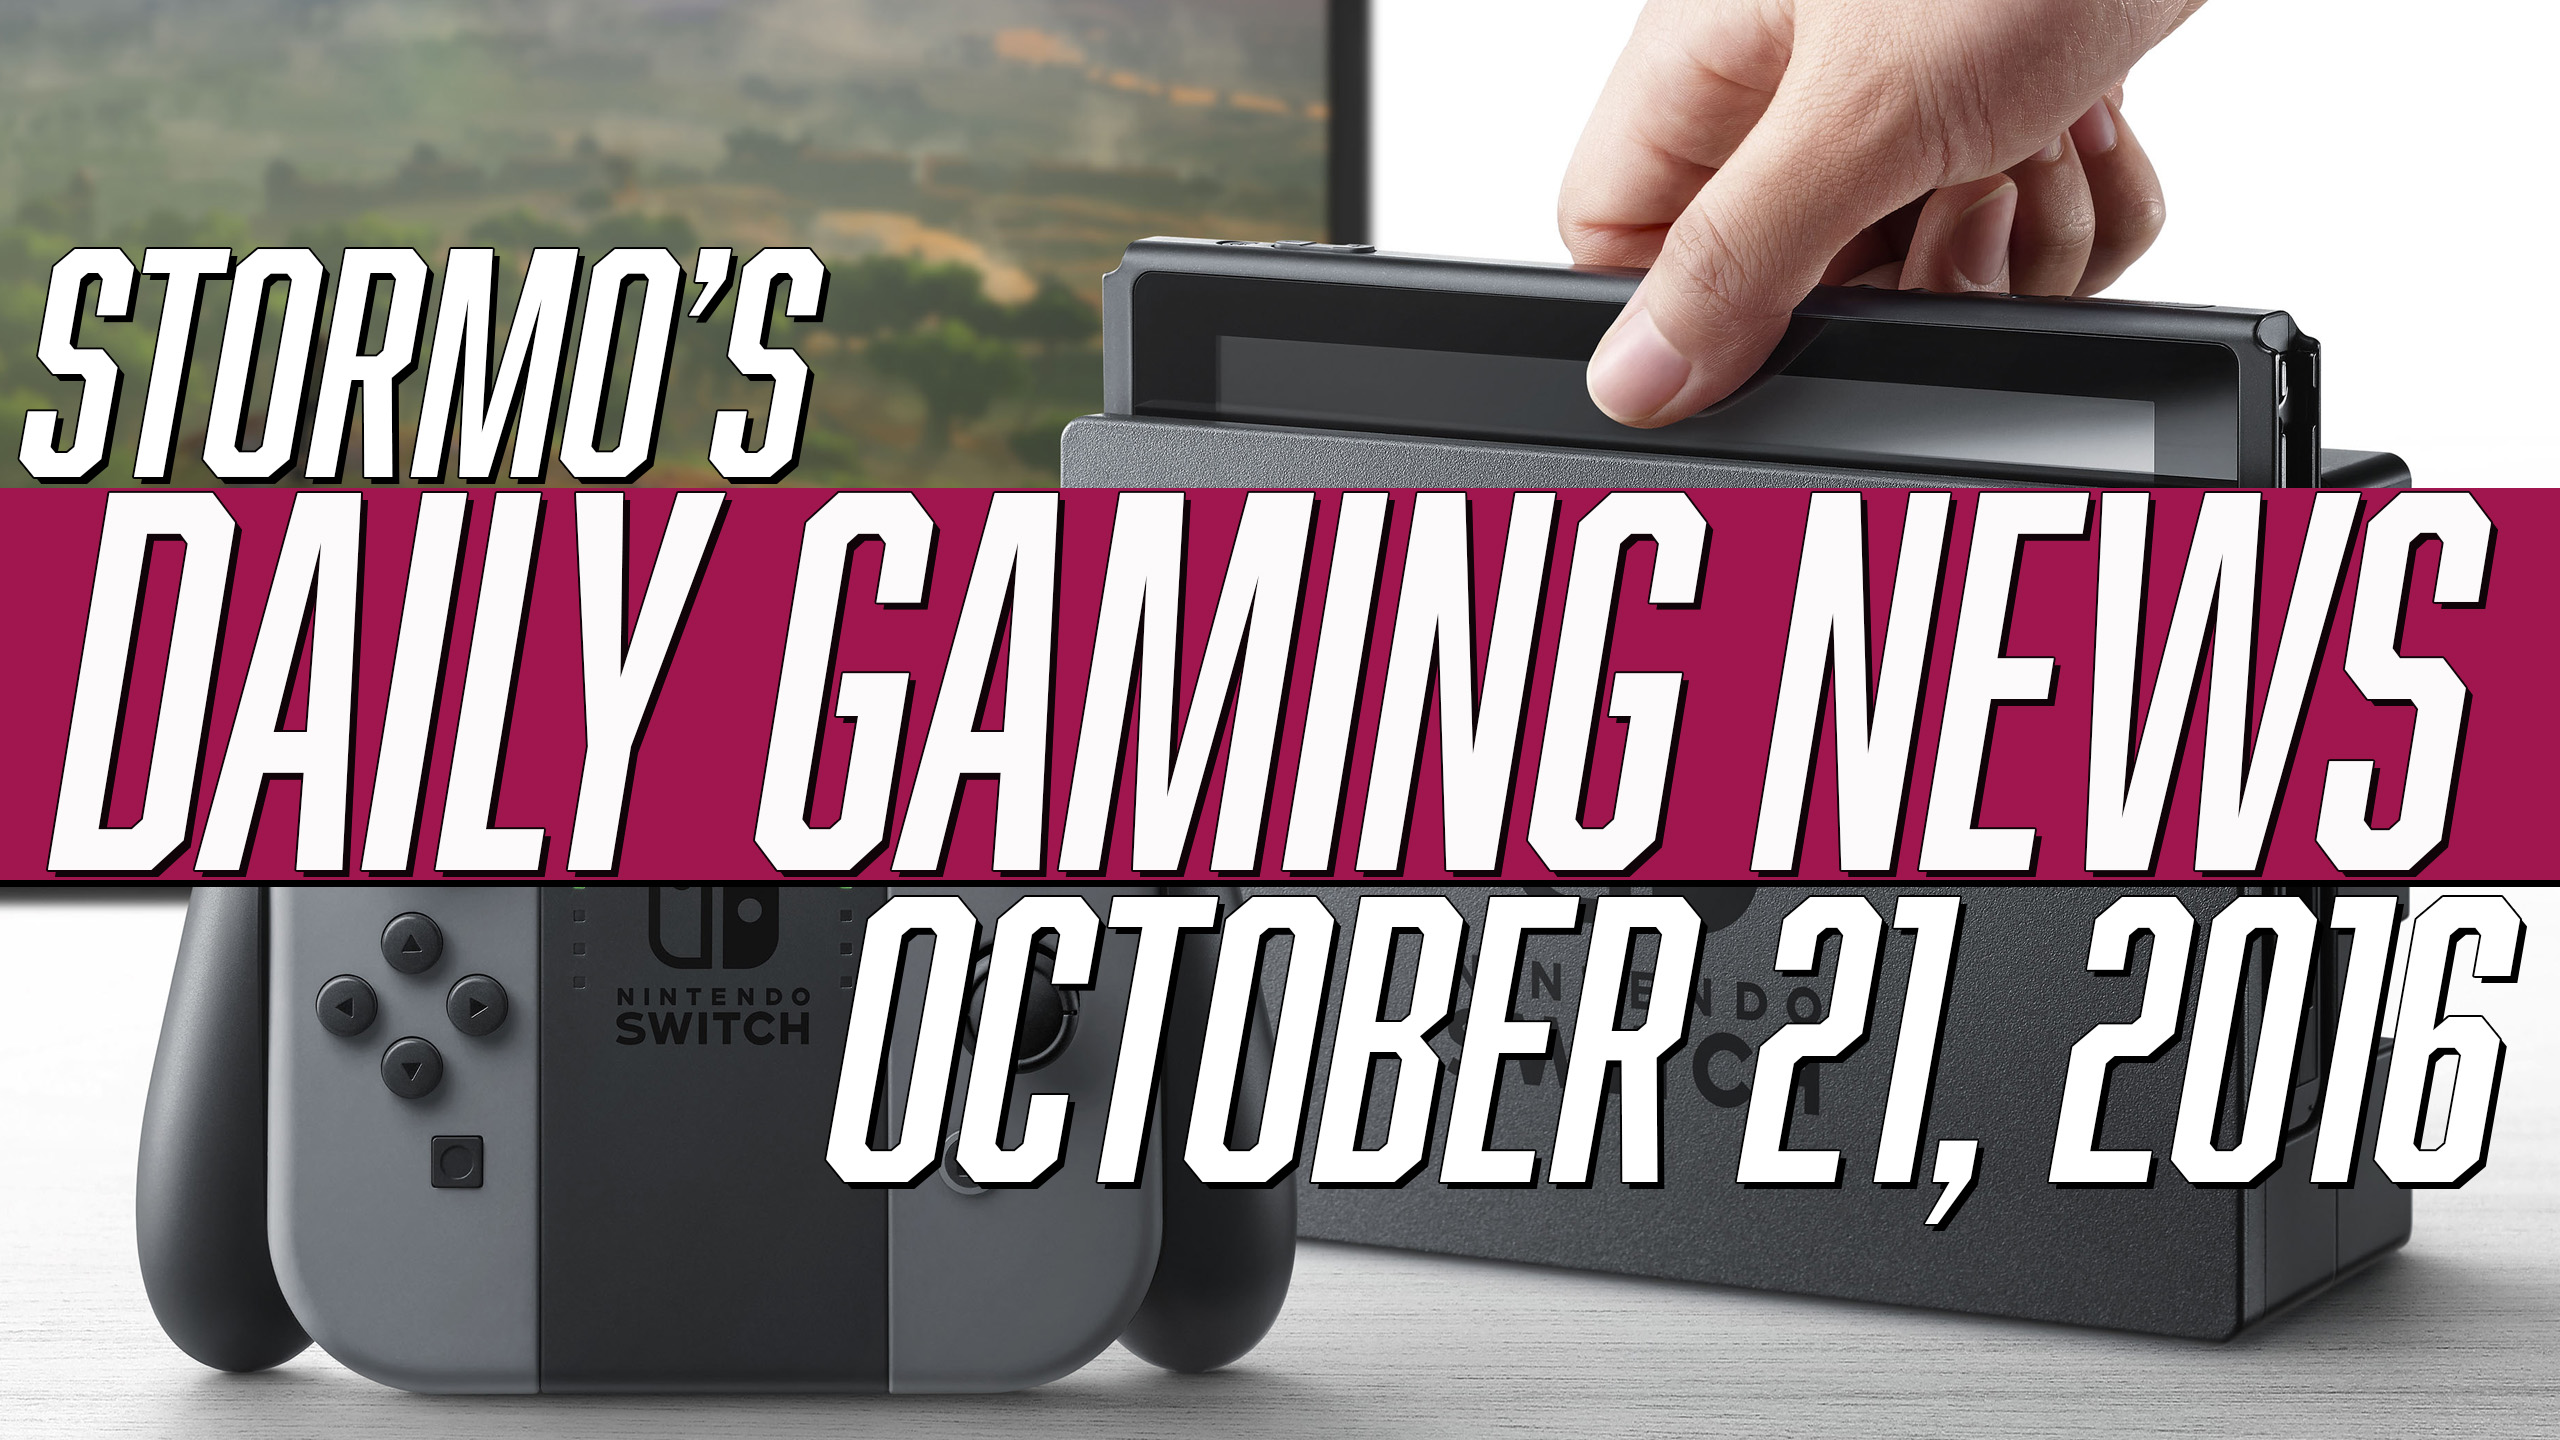 Daily Gaming News - October 21, 2016